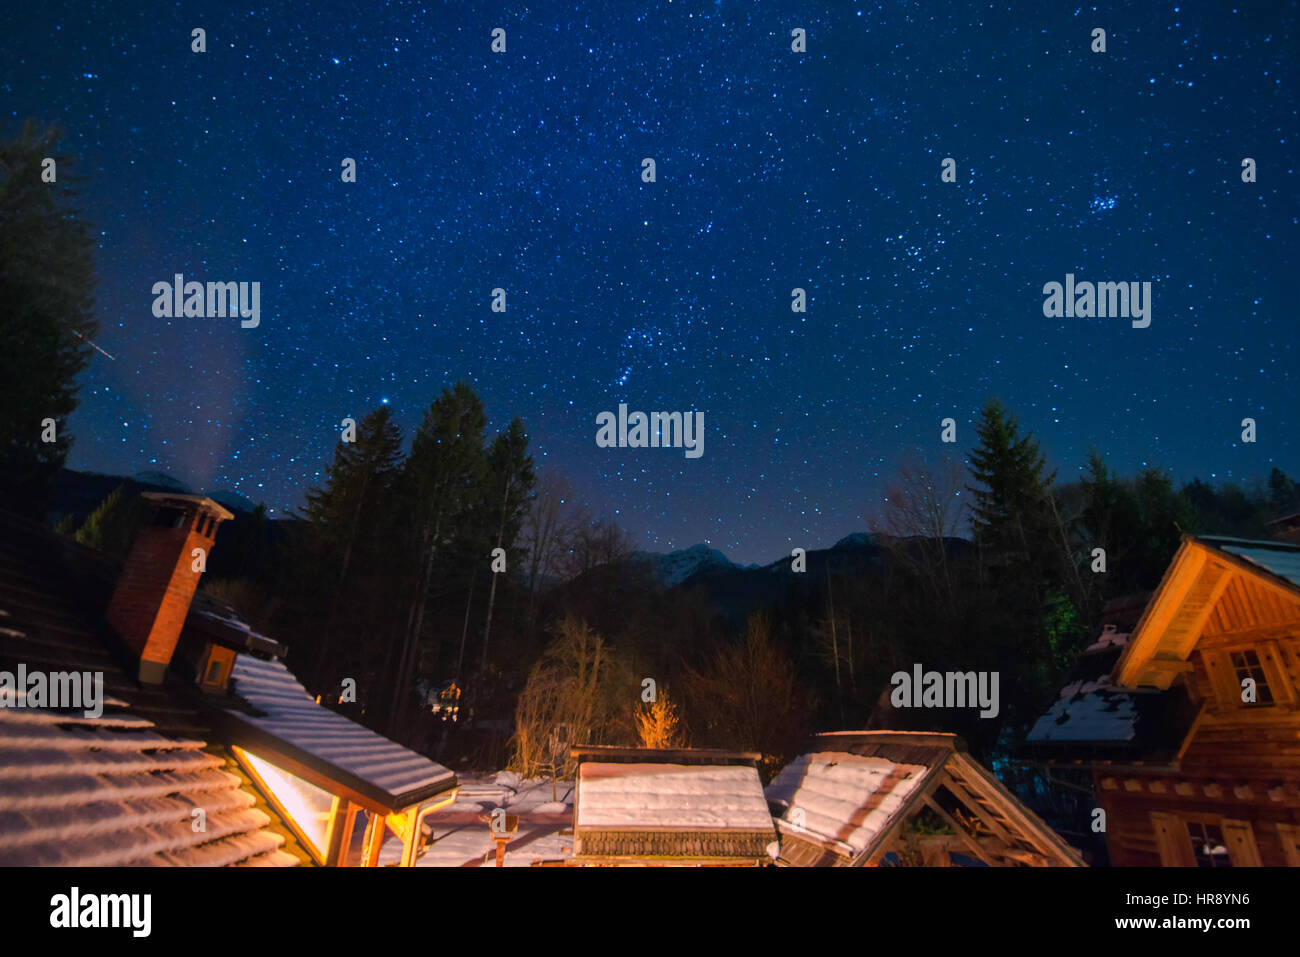 Cielo notturno e stelle sopra cabine in montagna in inverno, idilliaco scena di mezzanotte Foto Stock